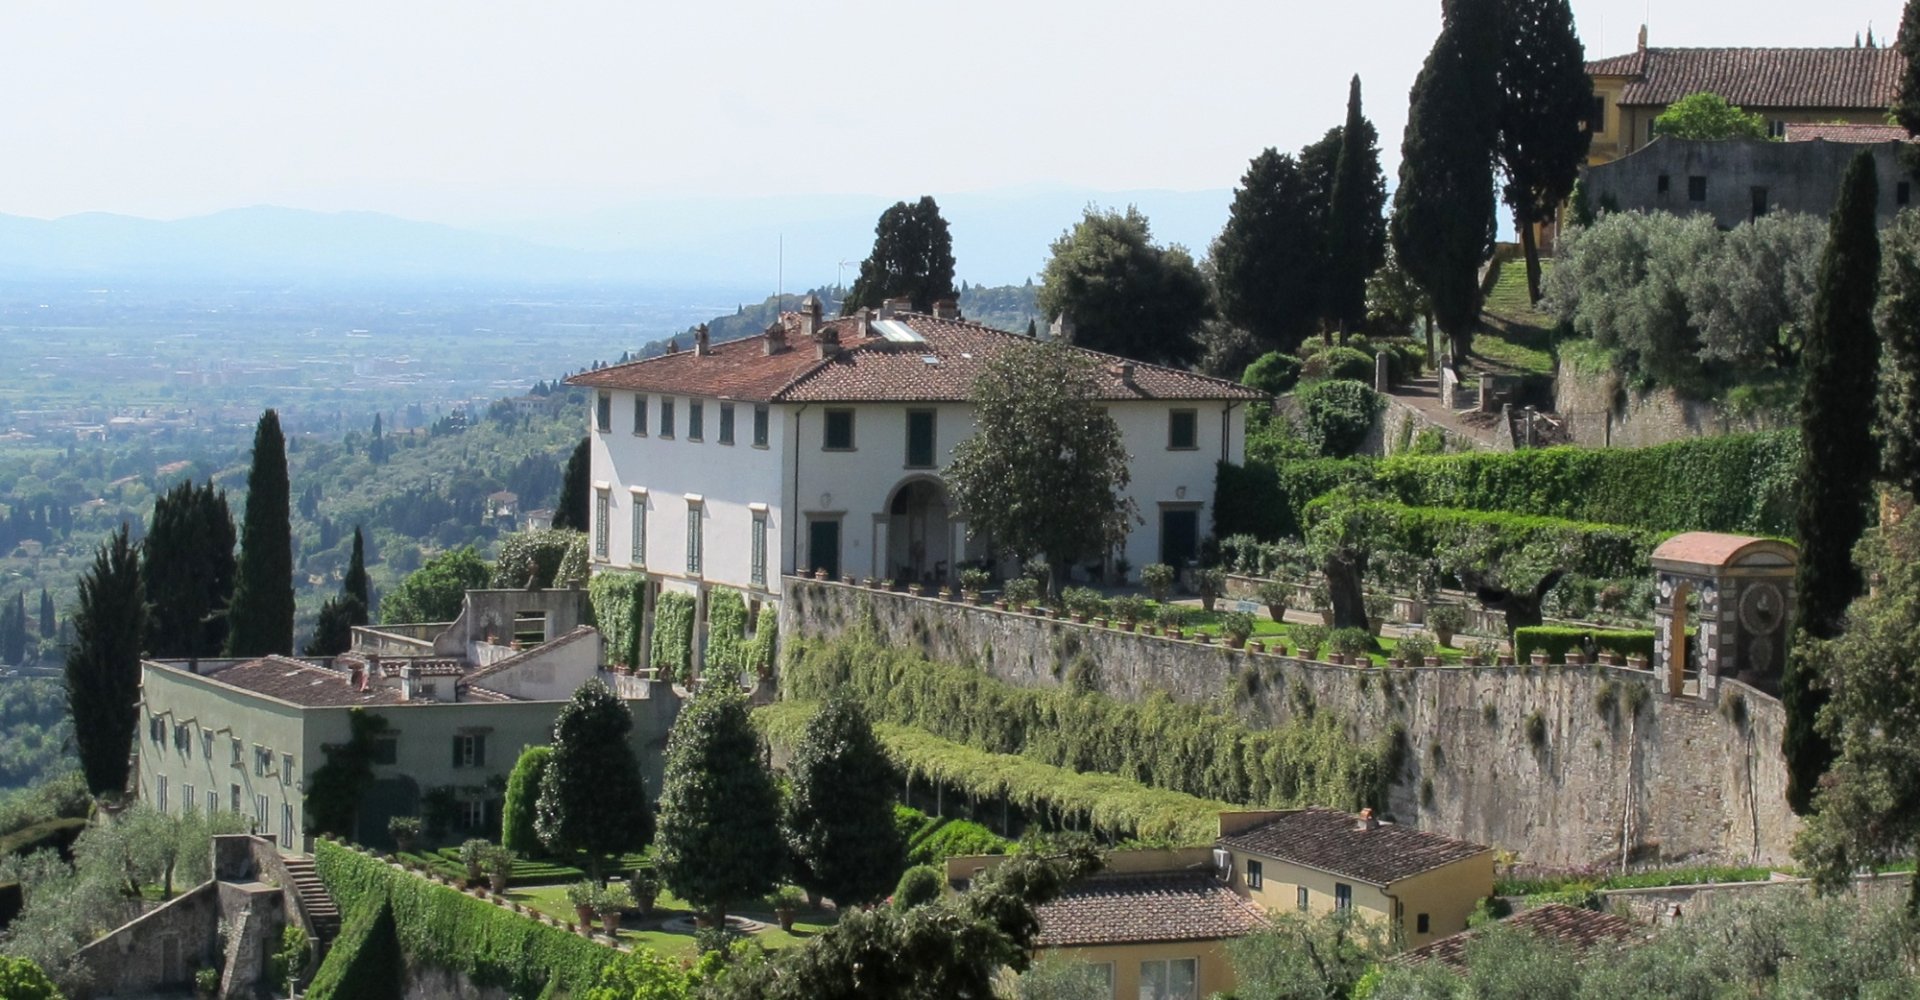 Villa Medici, Fiesole